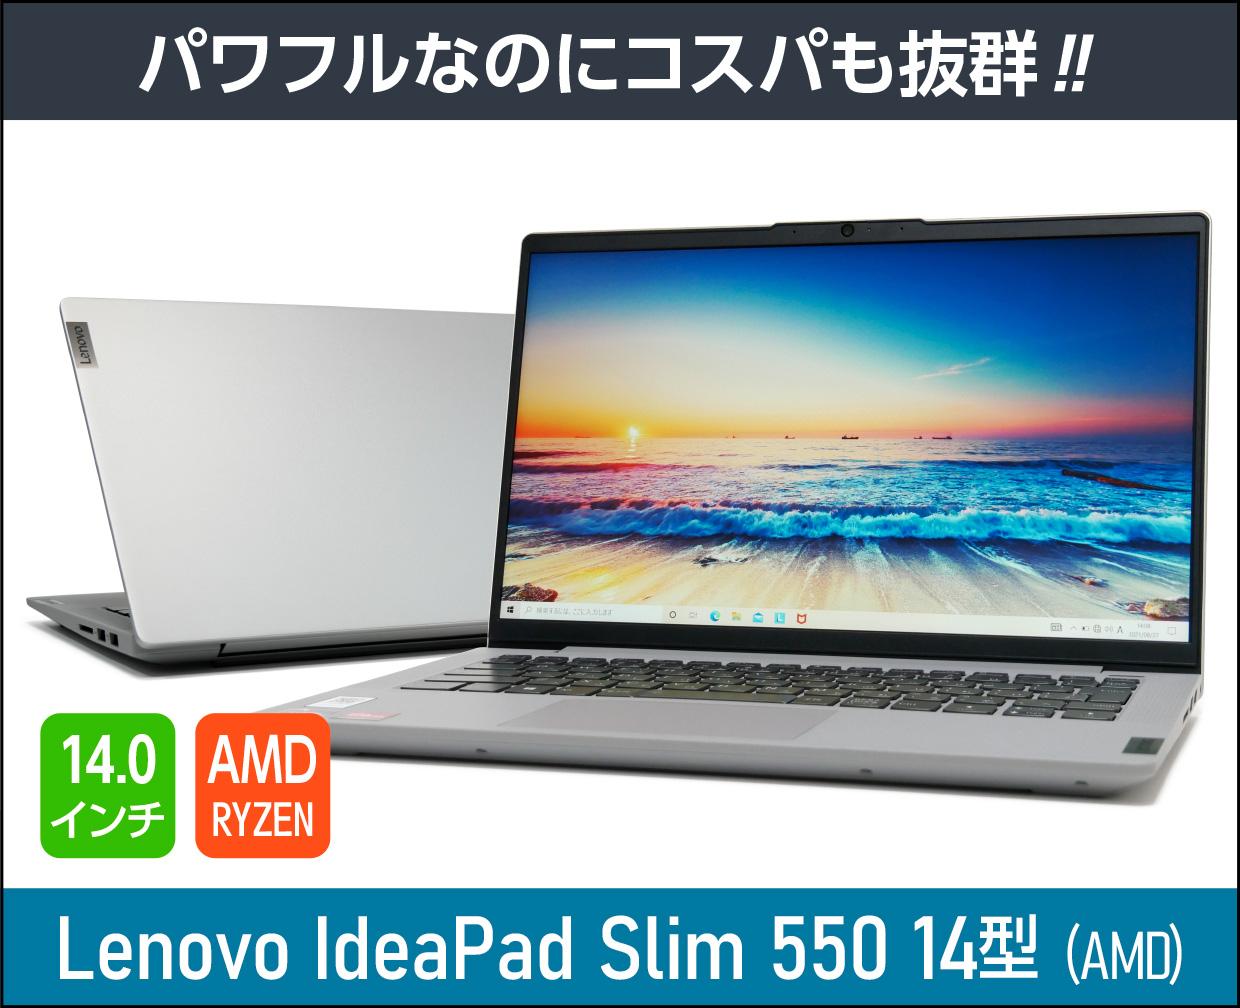 有名ブランド IdeaPad Slim 550 AMD Ryzen 5 256GB 14型HD